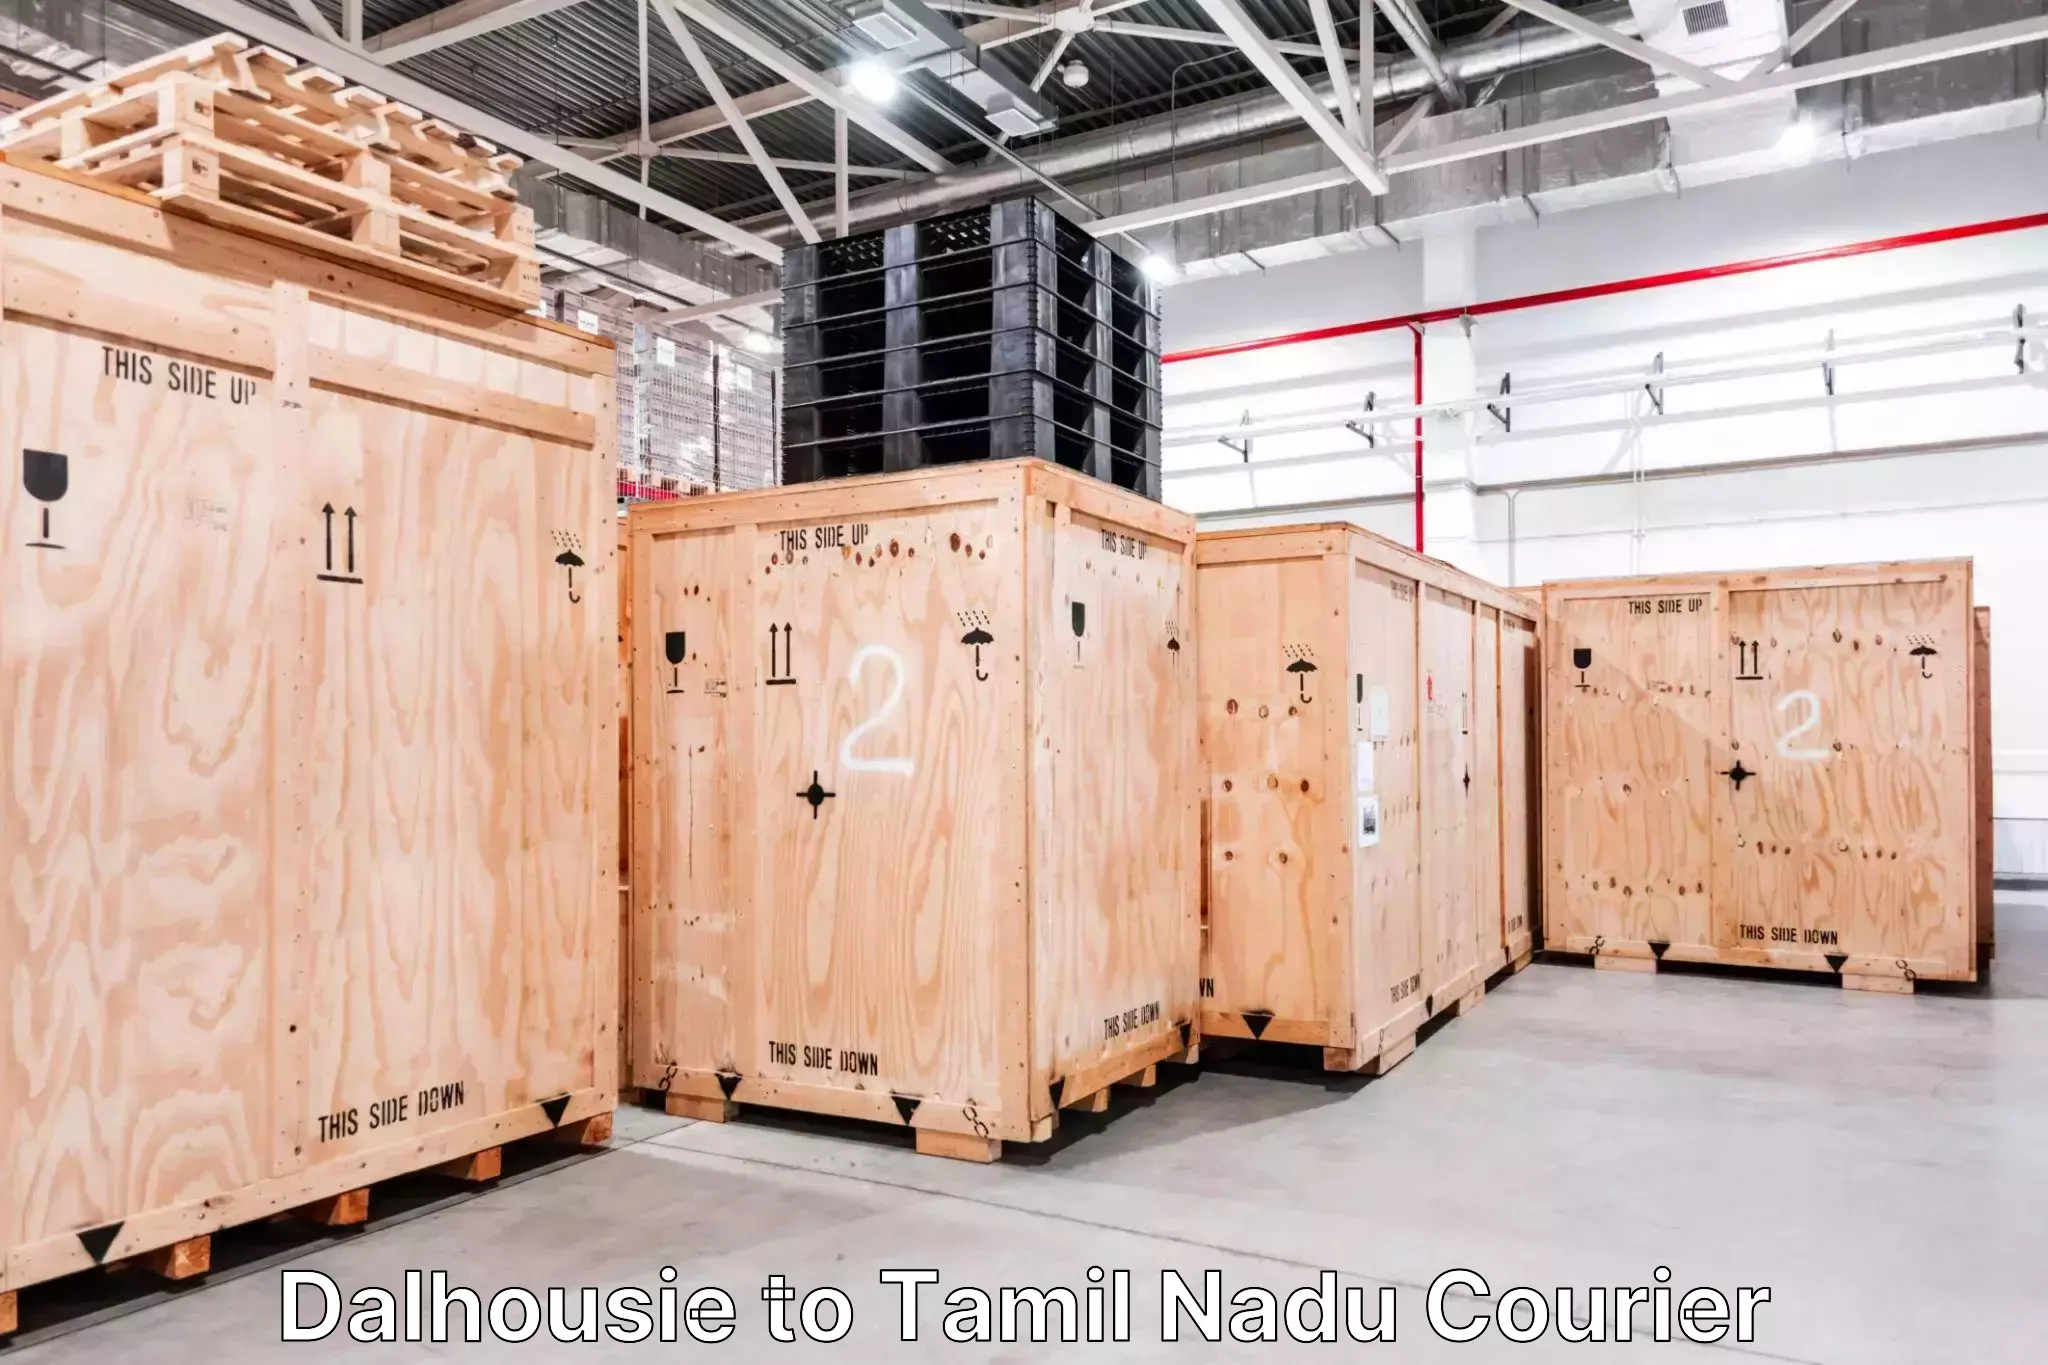 Luggage transport company Dalhousie to Tamil Nadu